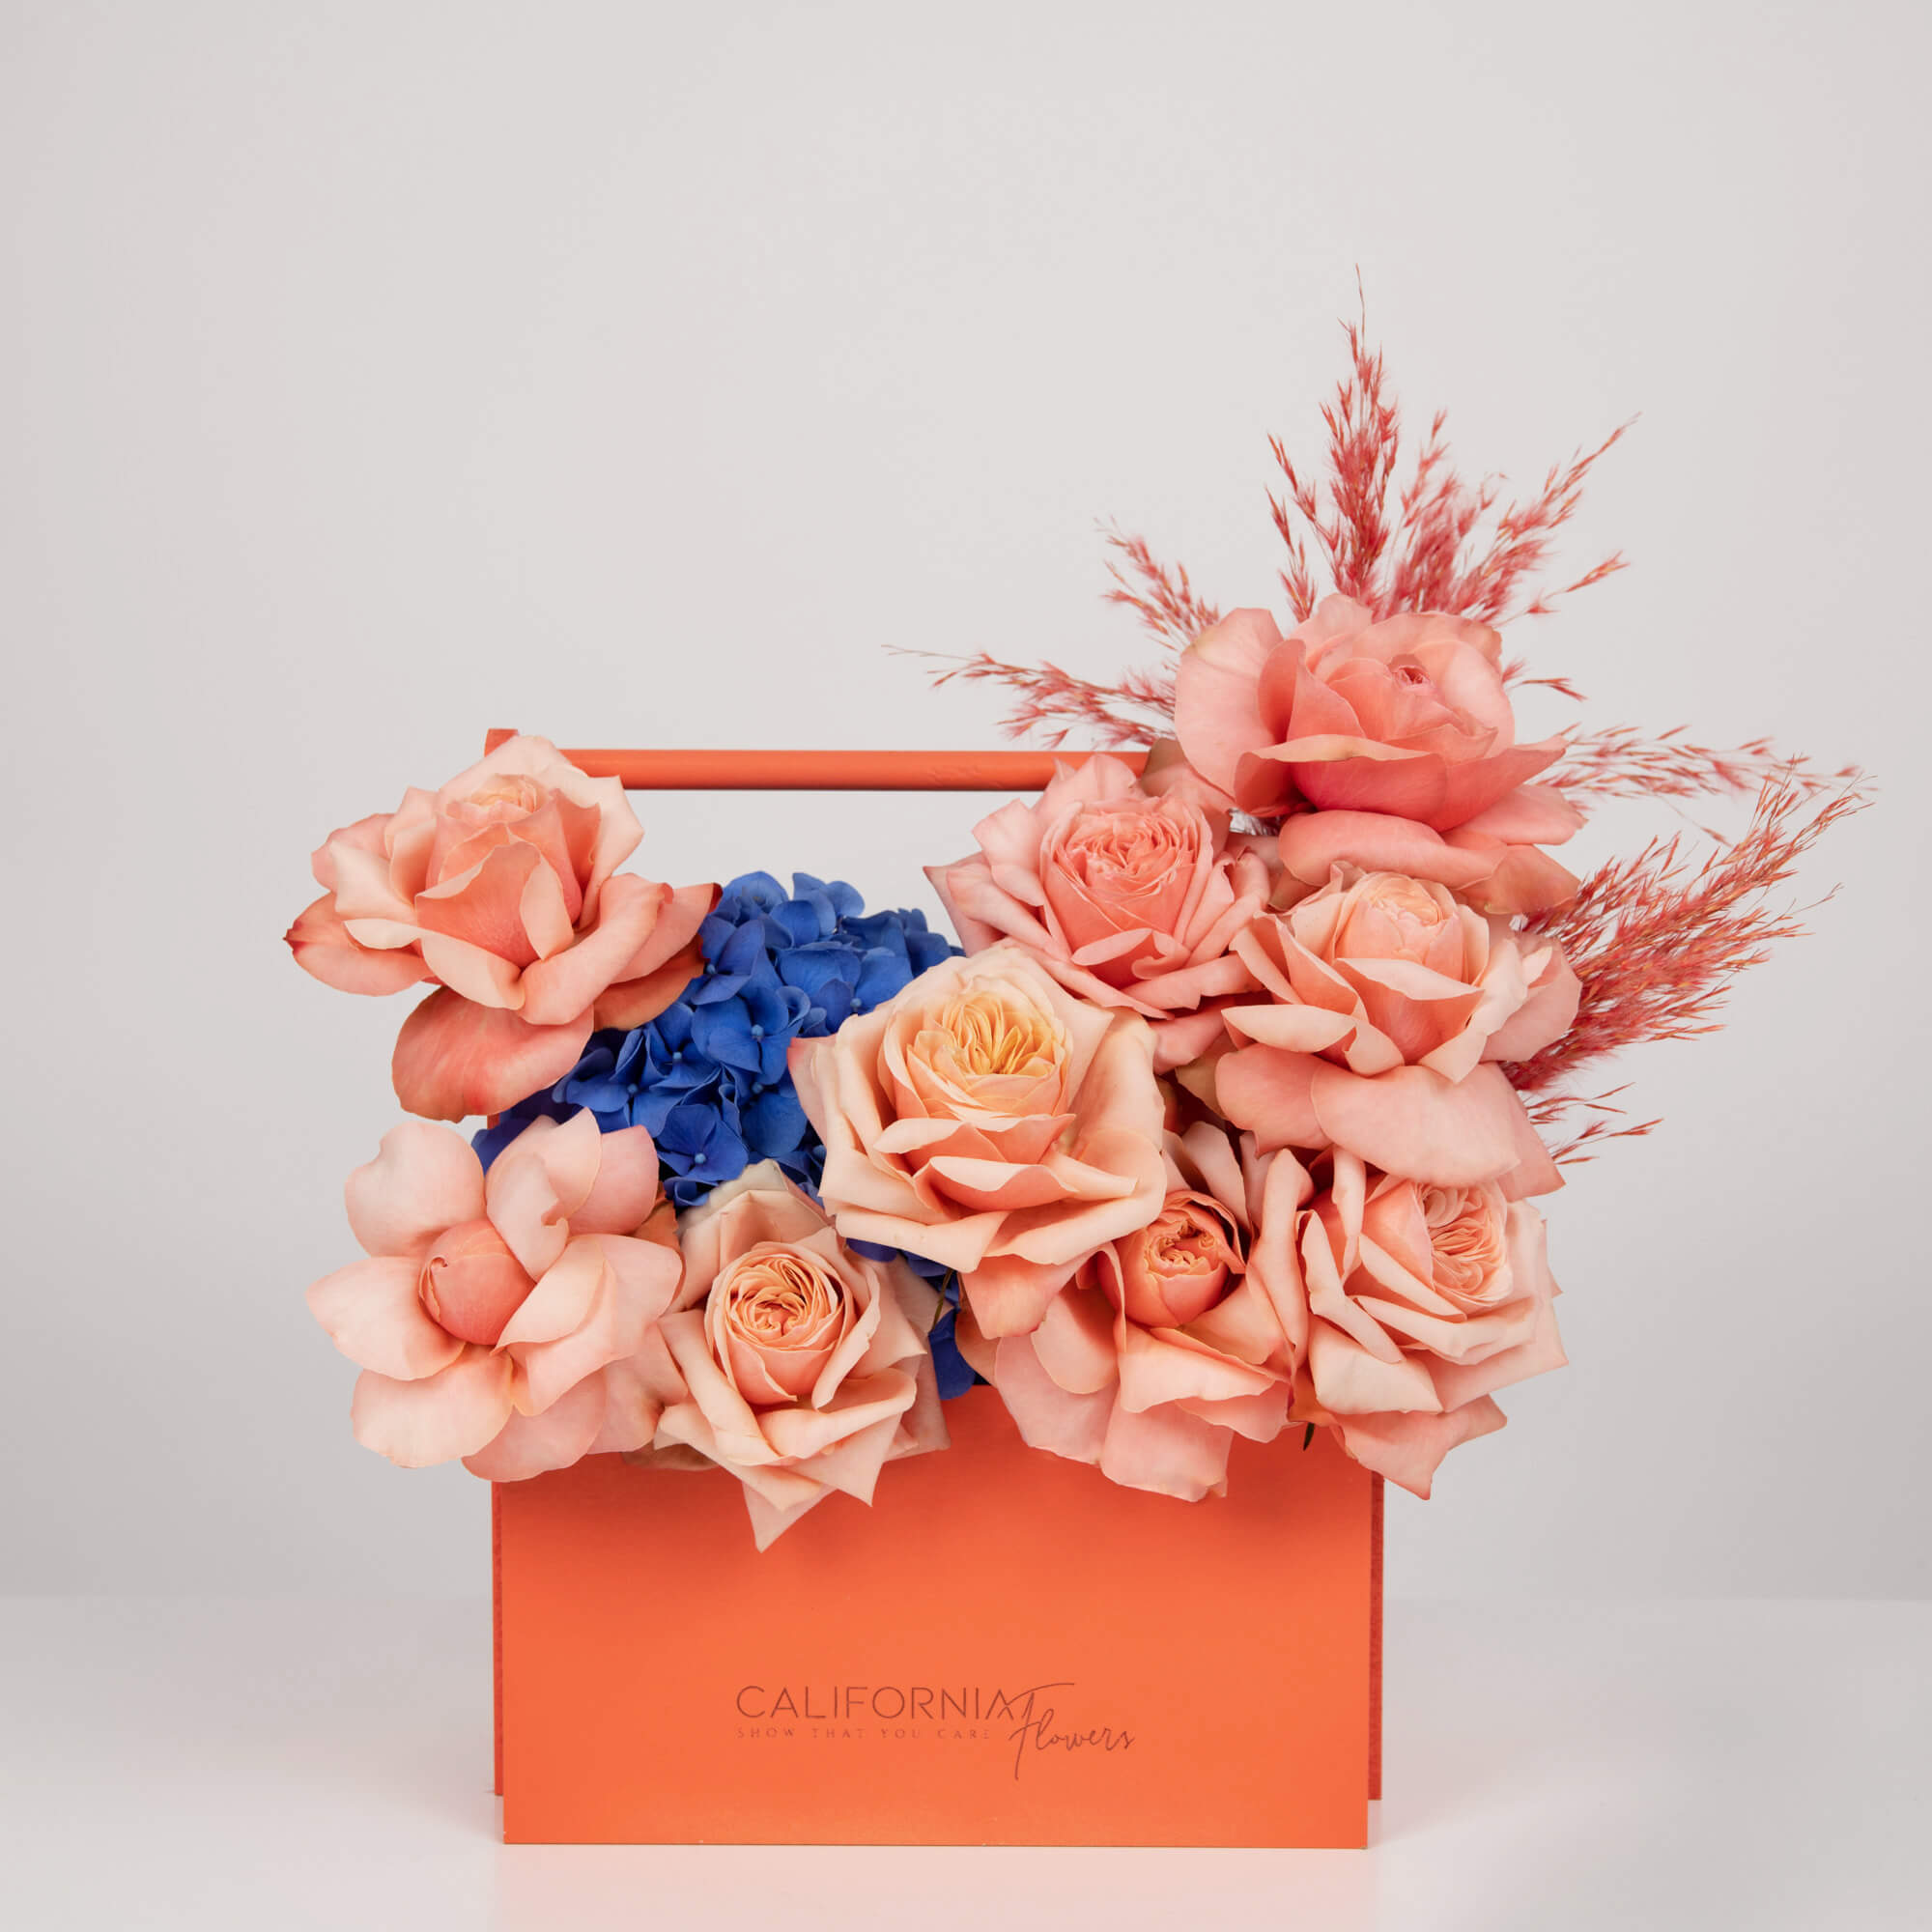 Aranjament floral in cutie cu trandafiri si hortensie albastra, 1